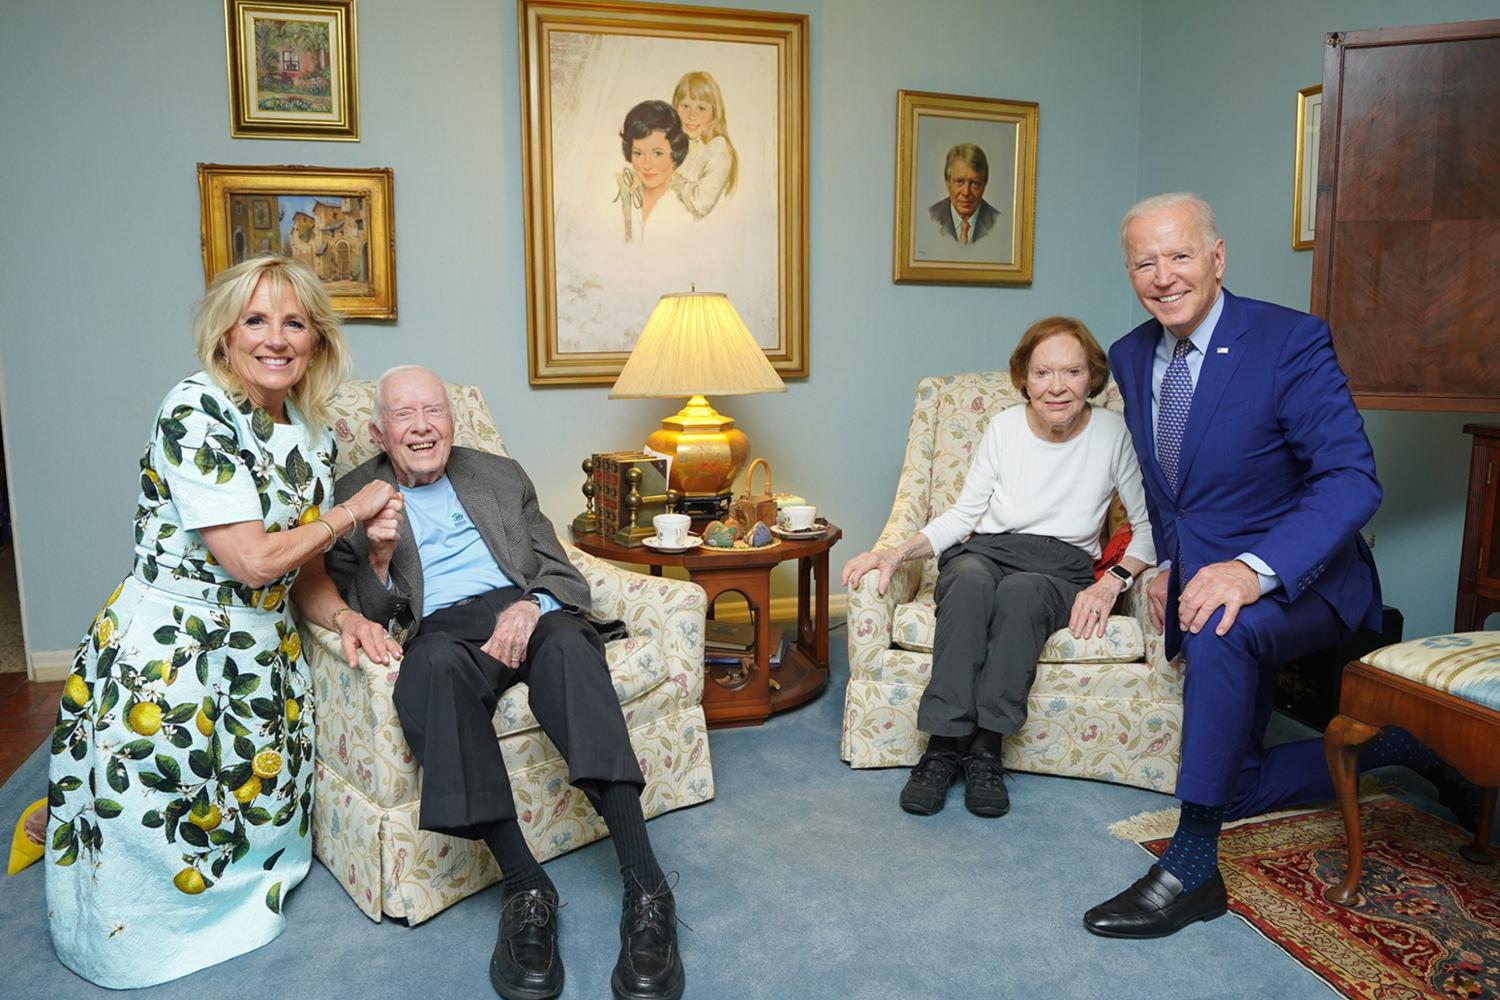 Von links: Jill Biden, First Lady der USA, Jimmy Carter, ehemaliger Präsident der USA, seine Frau Rosalynn Carter, ehemalige First Lady der USA, und Joe Biden, Präsident der USA, sitzen im Haus der Carters für ein gemeinsames (ziemlich verstörendes) Foto zusammen